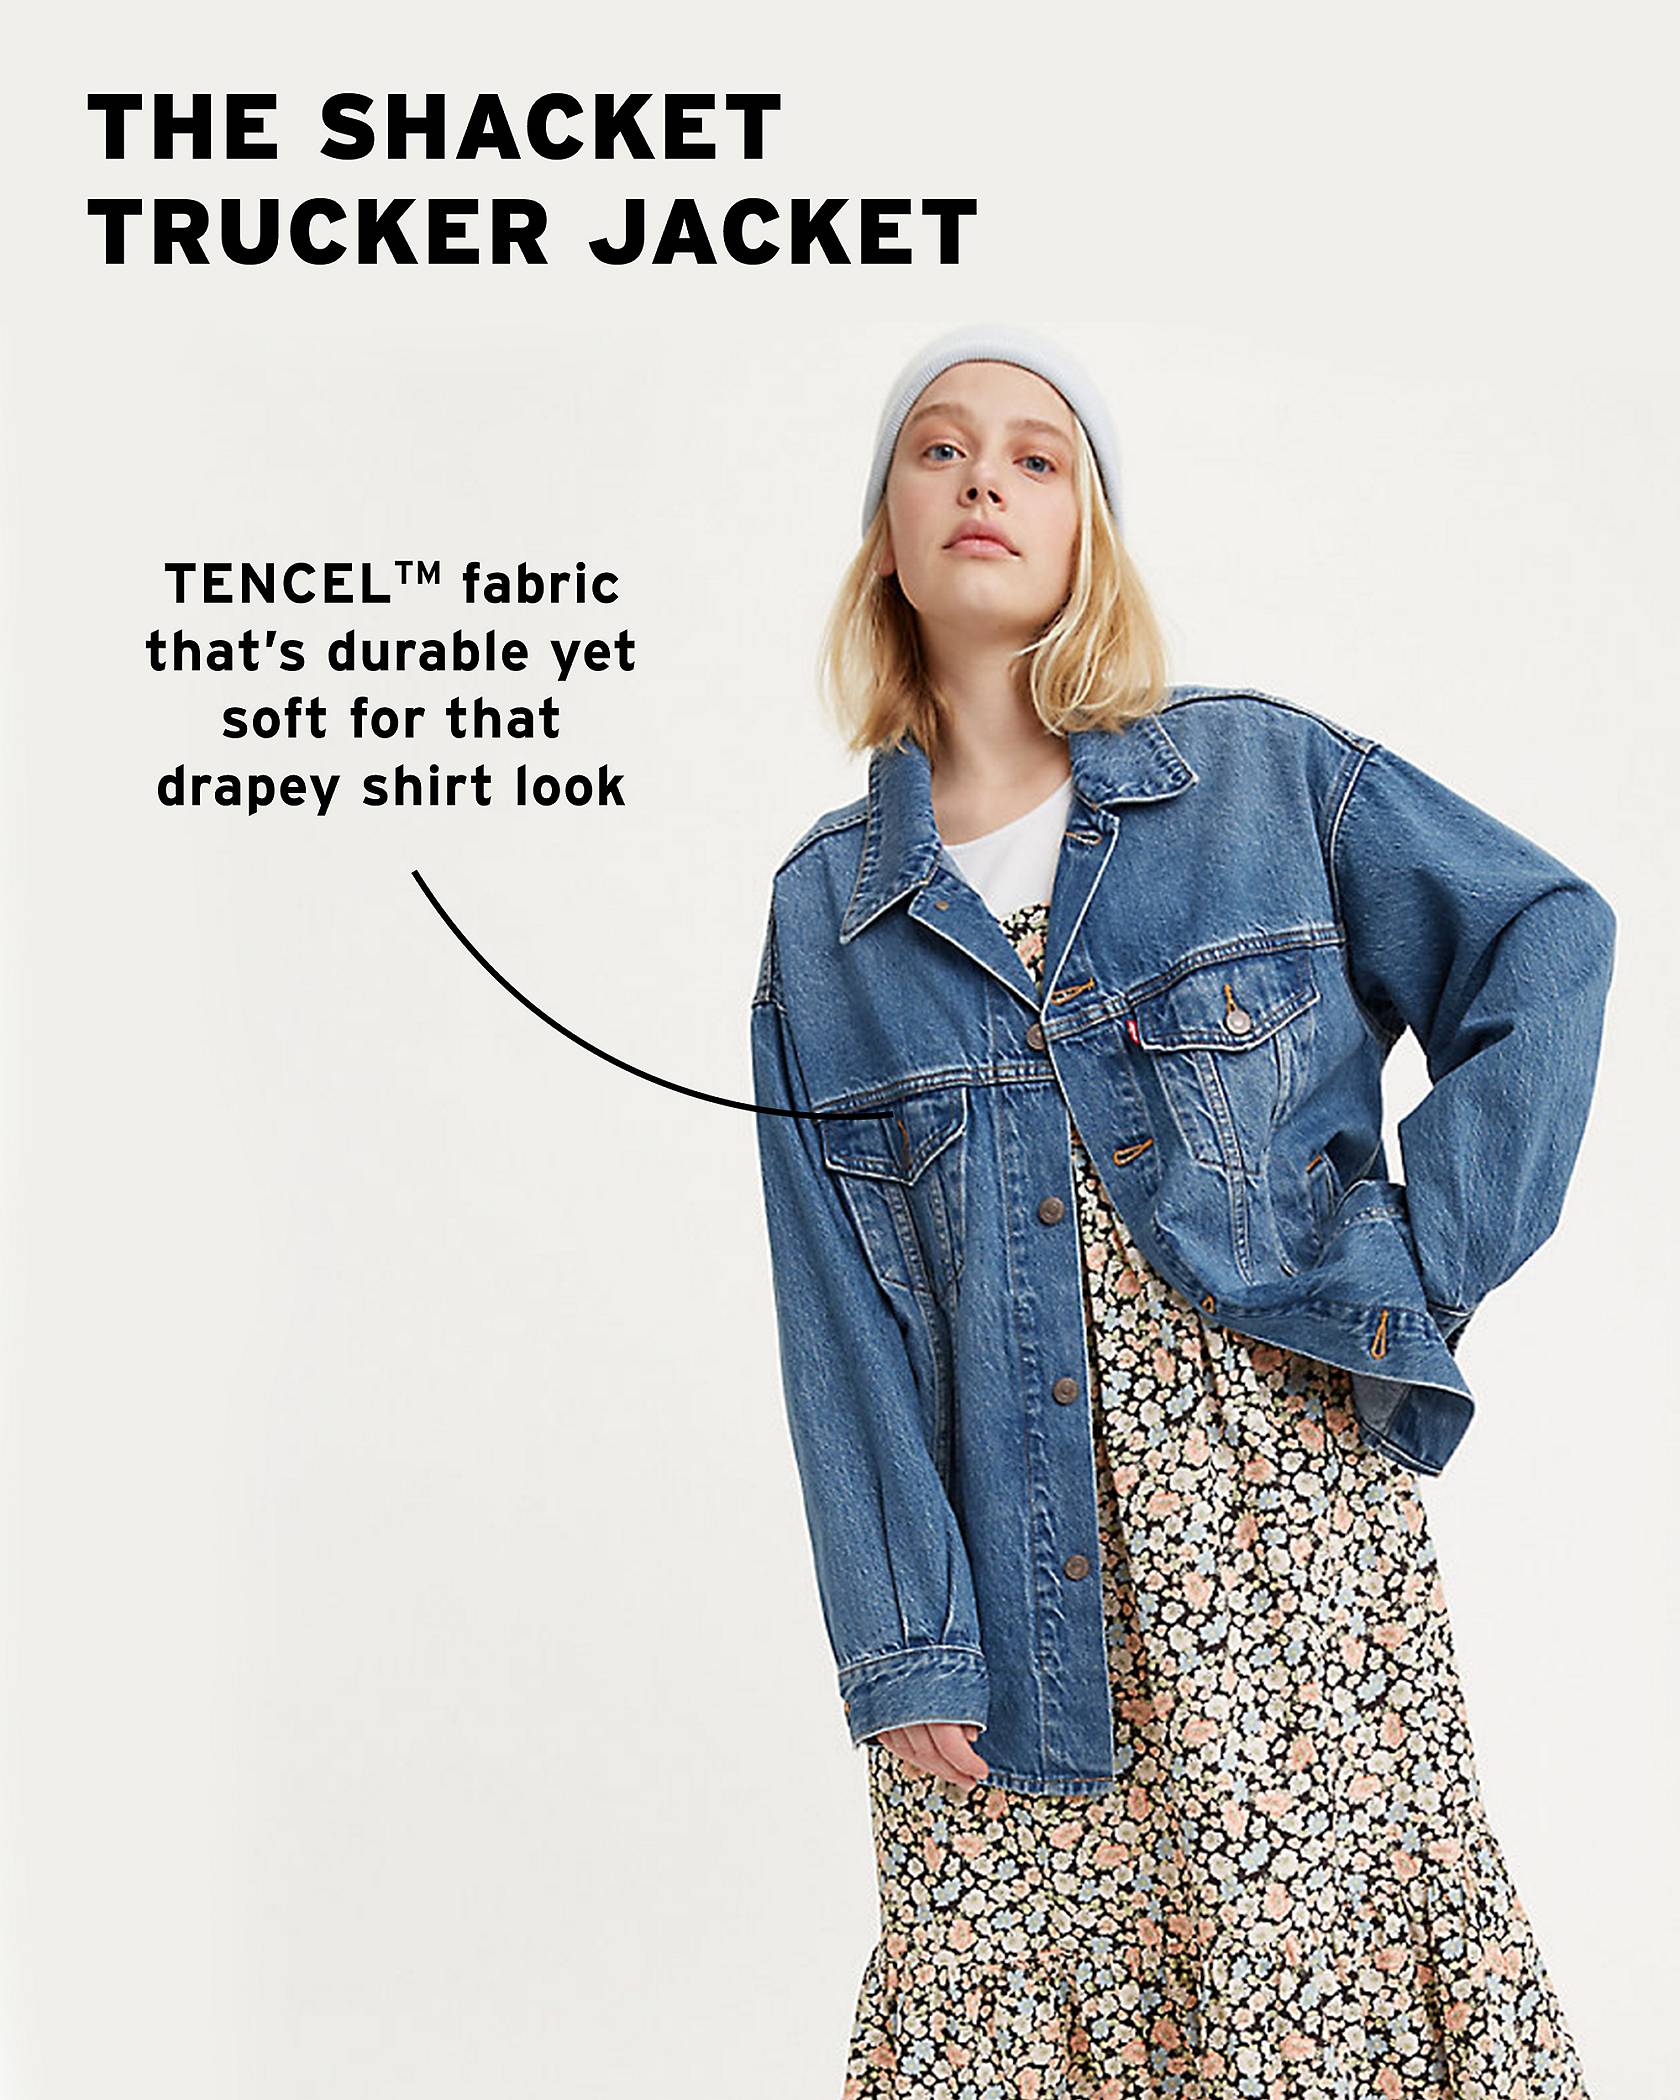 Trucker Jackets: Top 6 Fits & Styling for Men & Women